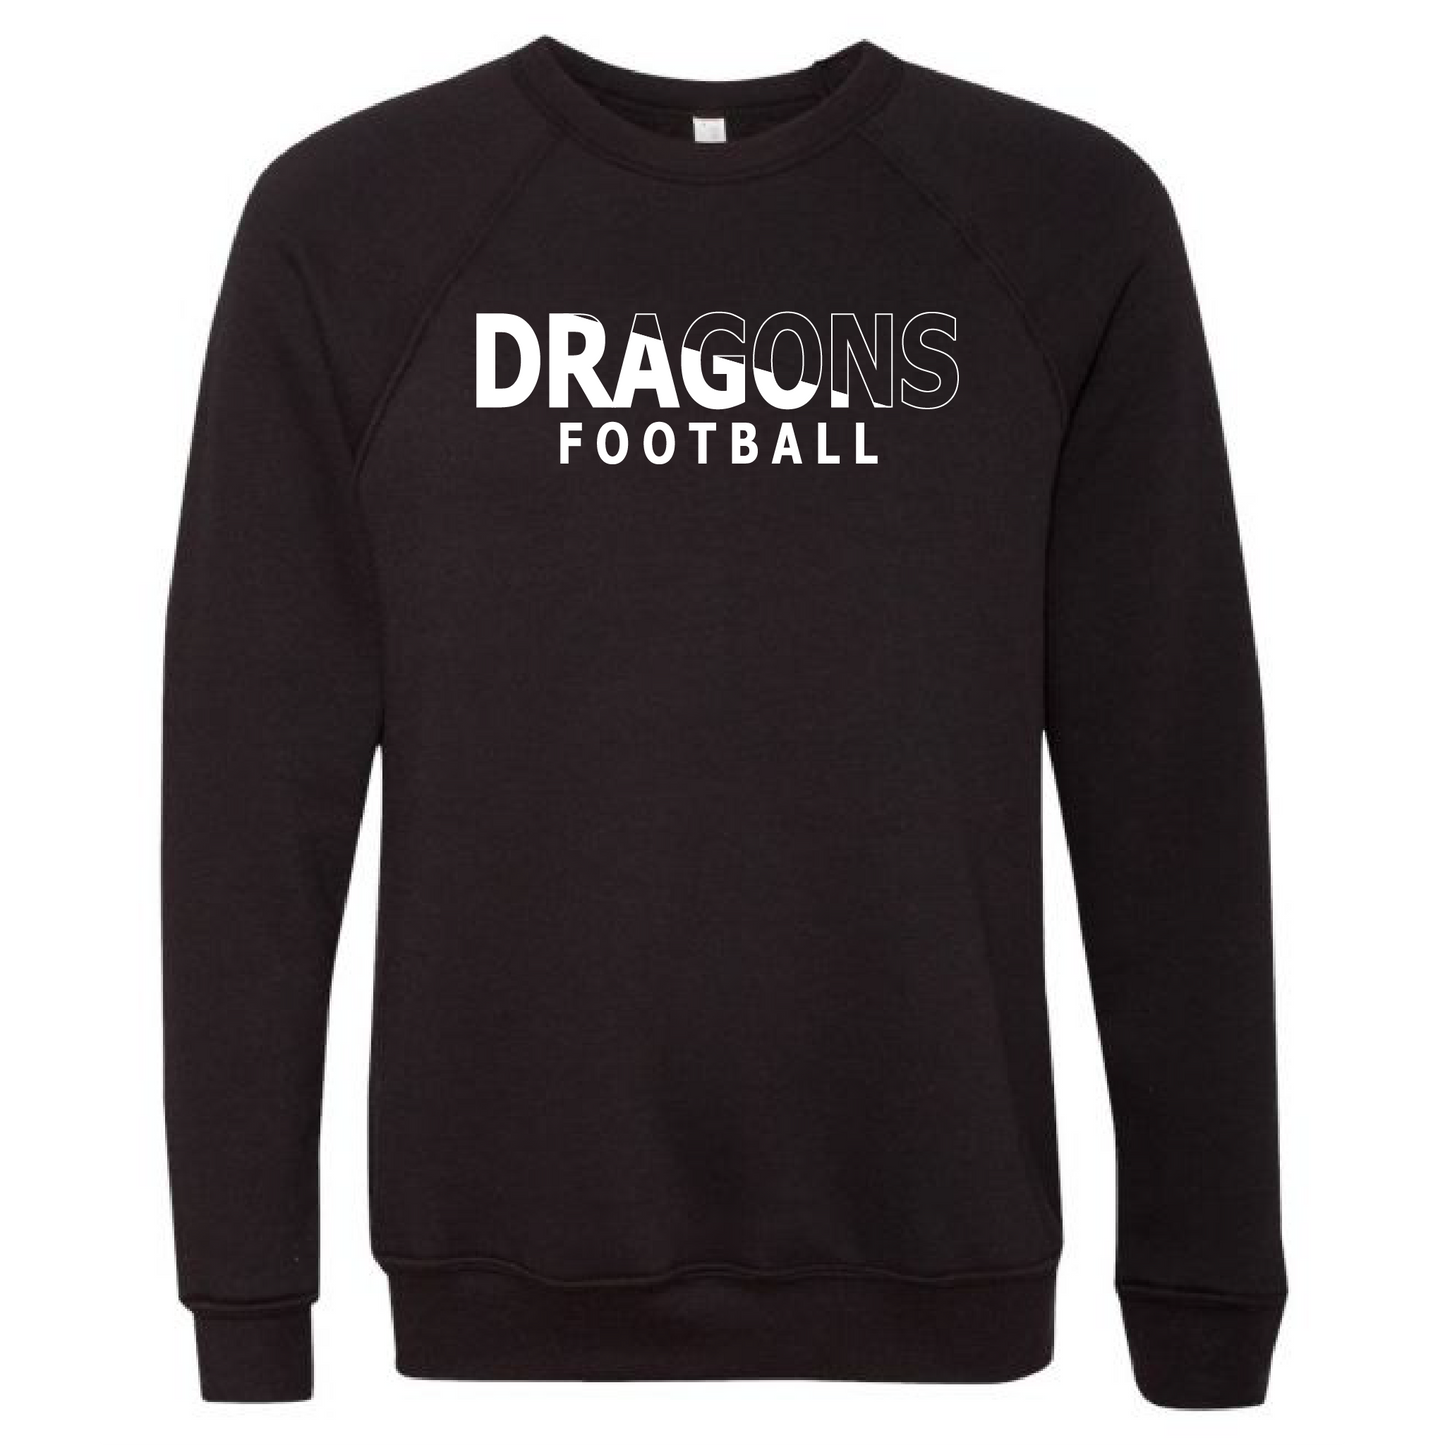 Unisex Sweatshirt - Dragons Football Slashed White